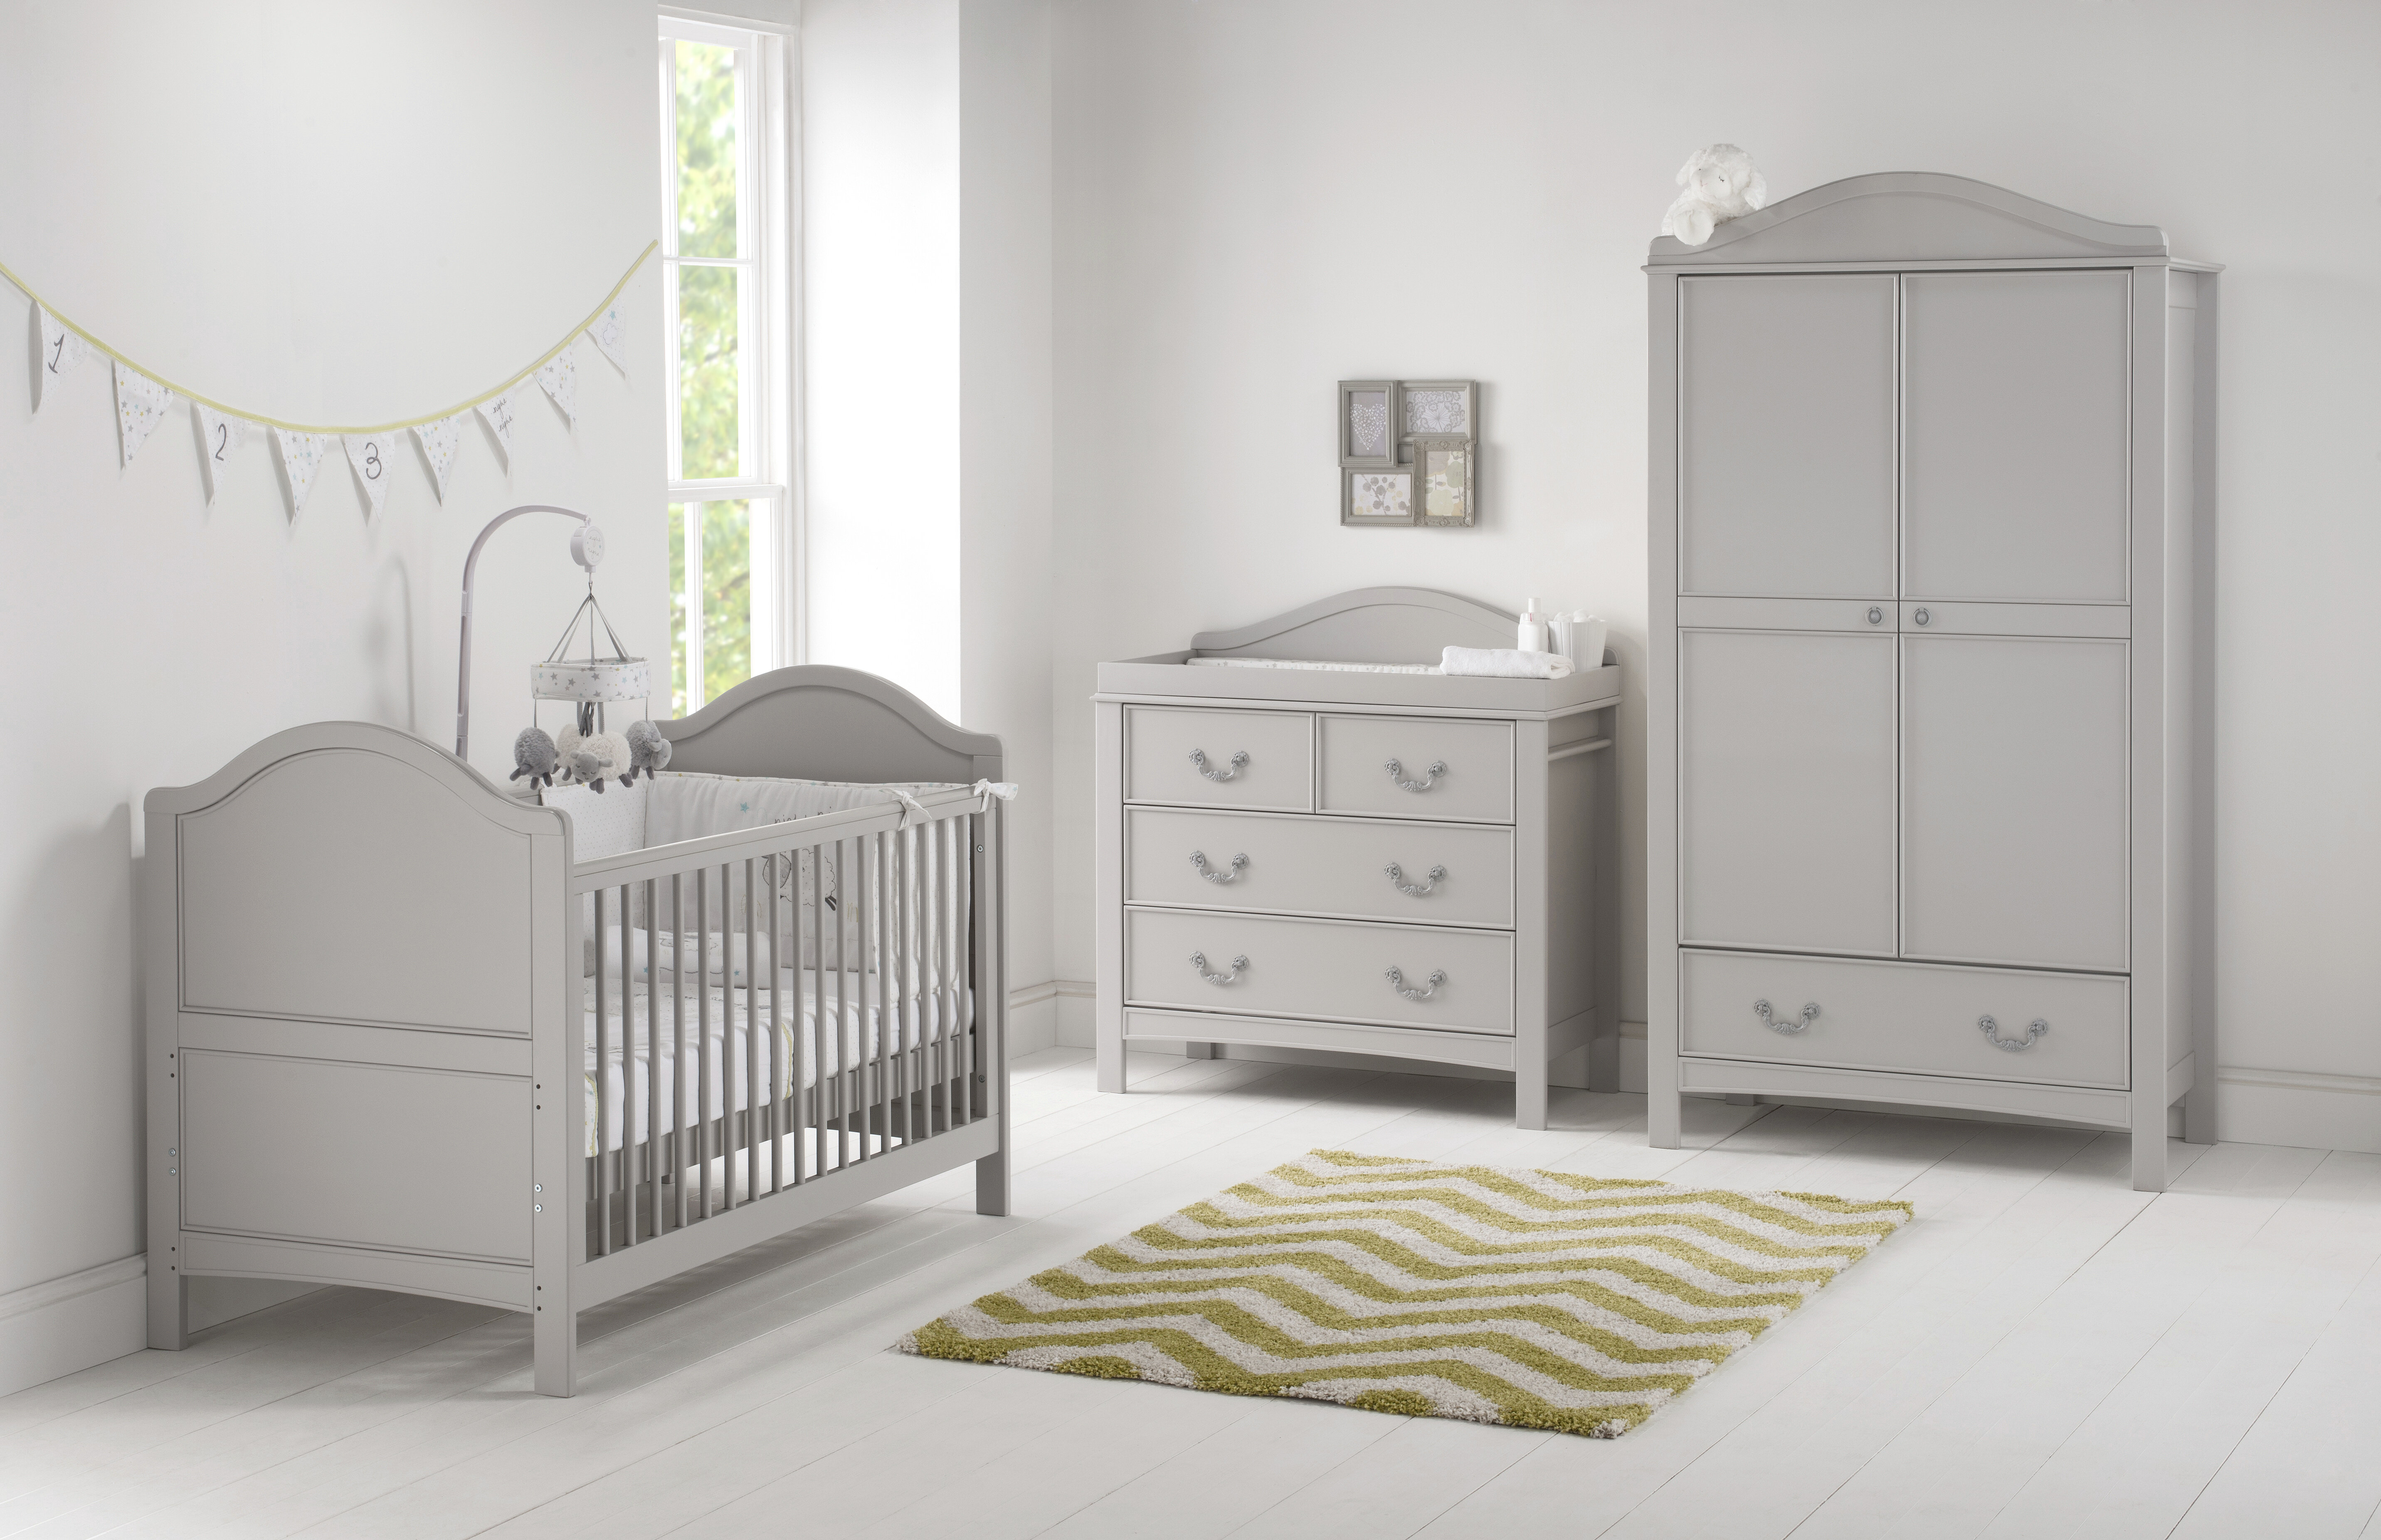 cot bed nursery set